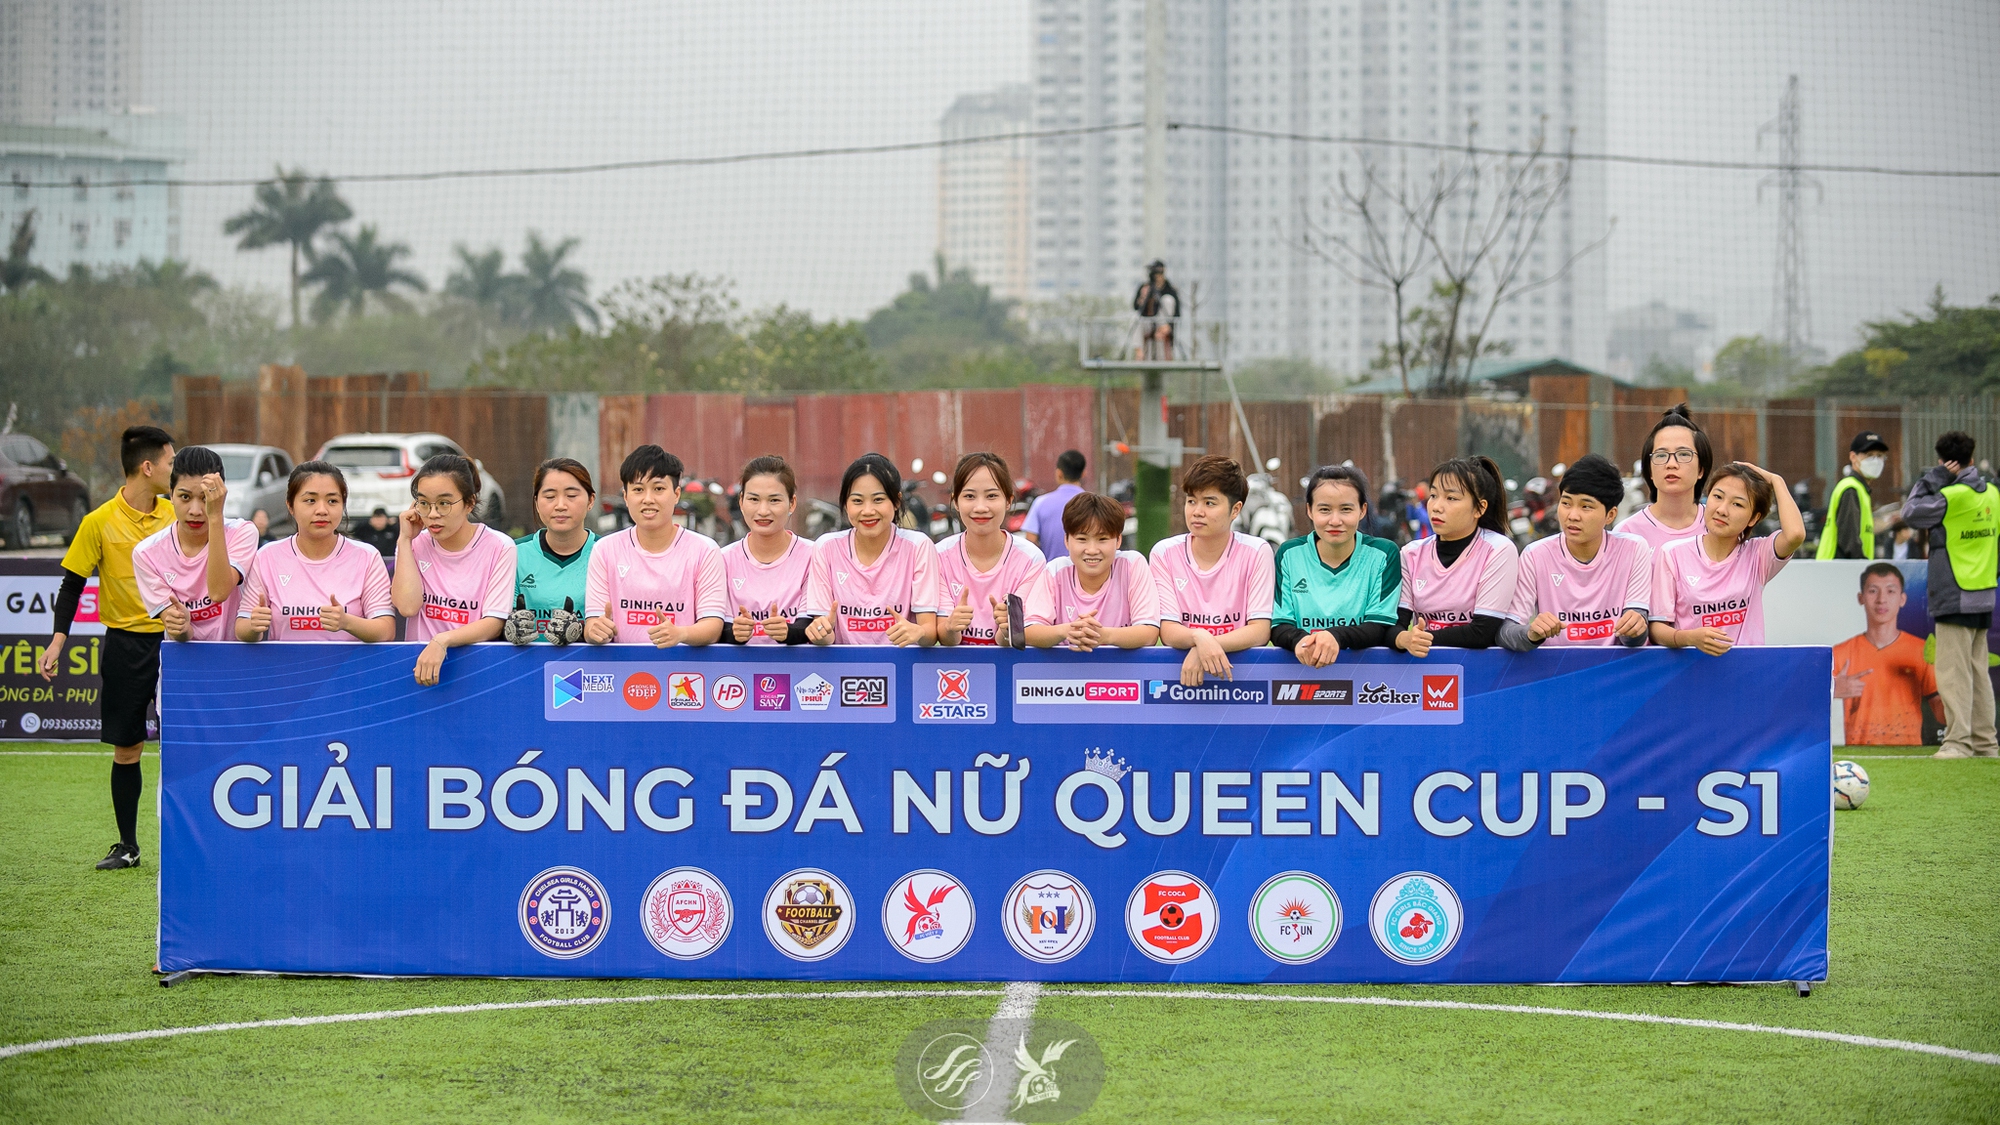 Hành trình chinh phục ngôi vương của FC Việt Ý tại giải bóng đá Queen Cup S1 - Ảnh 2.